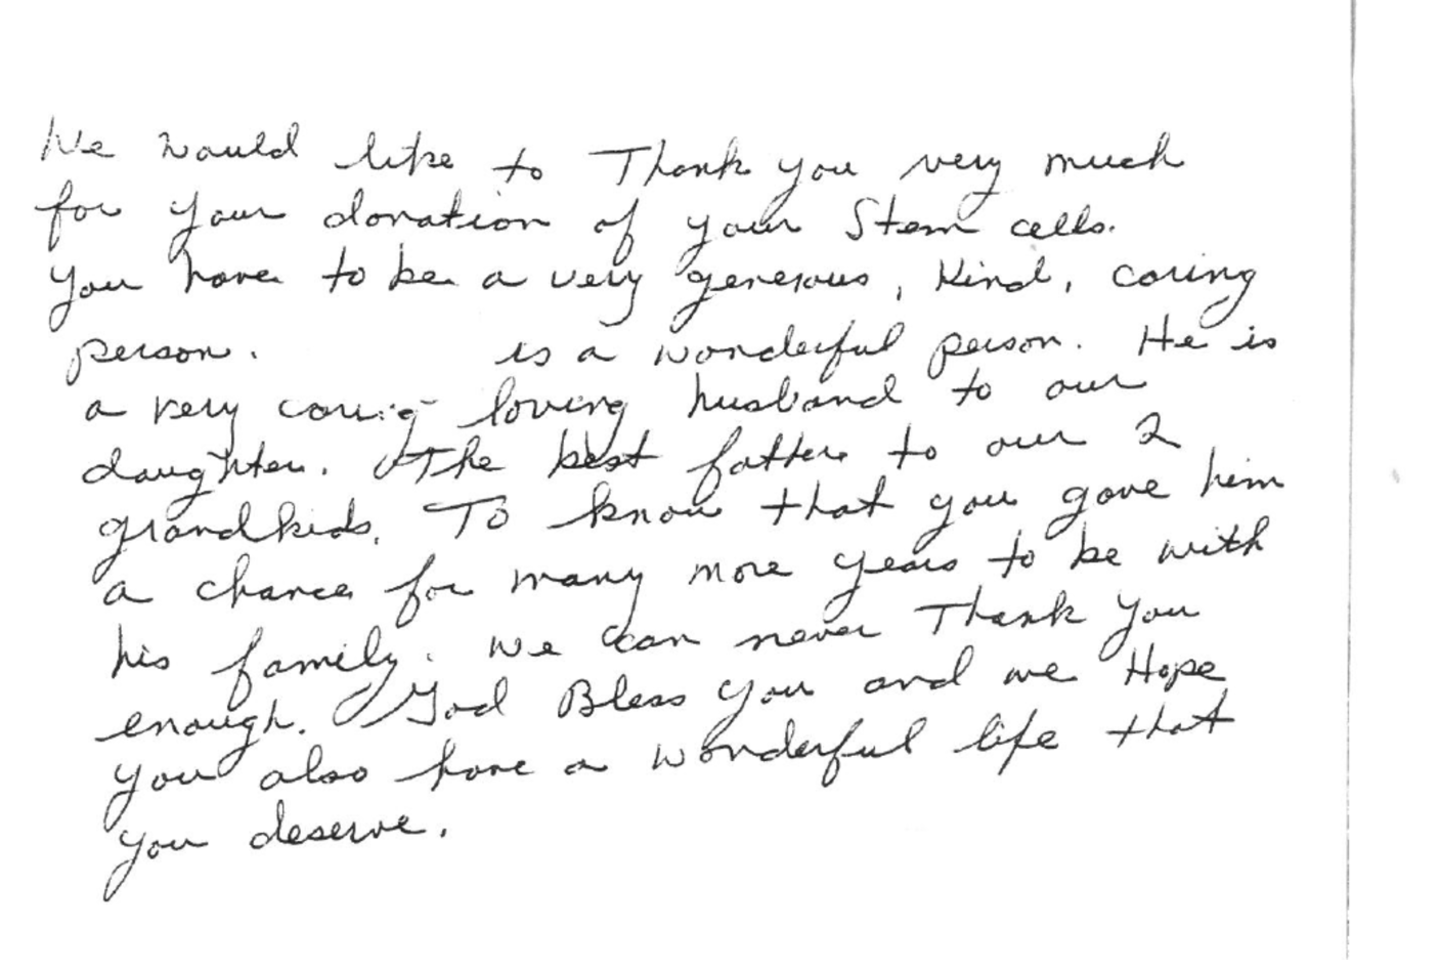 Paviešinti jautrūs ir dėkingumo kupini laiškai kaulų čiulpų donorams.